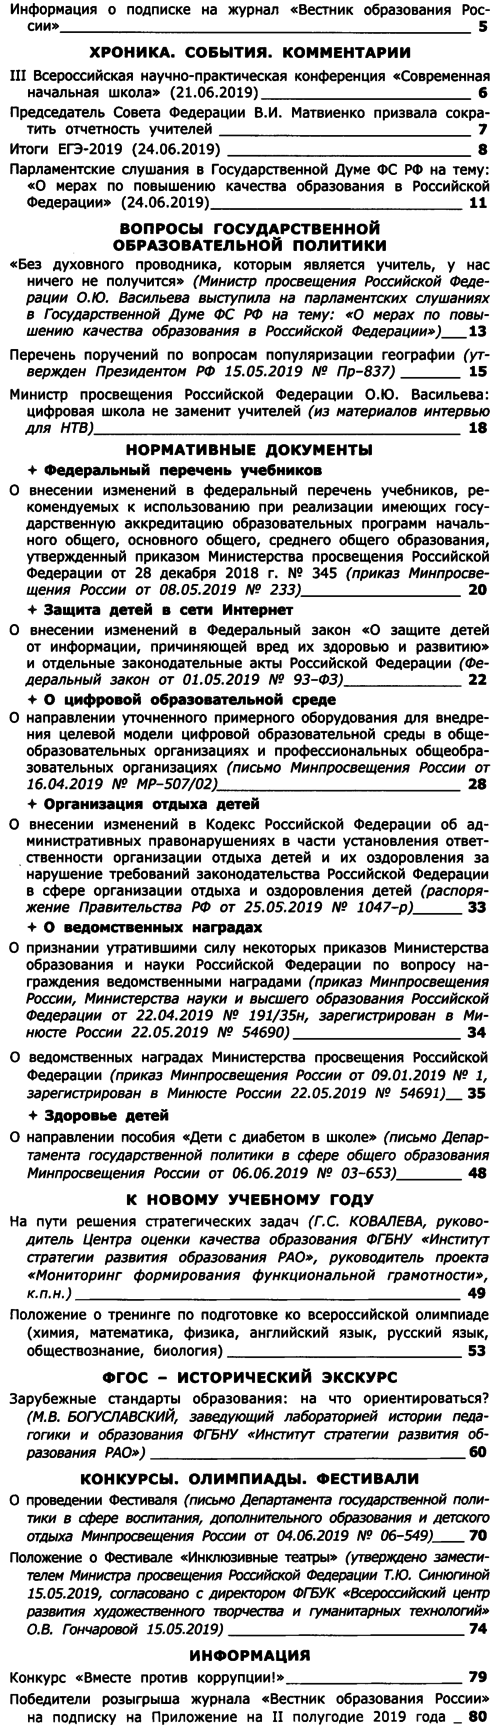 Вестник образования России 2019-14.png